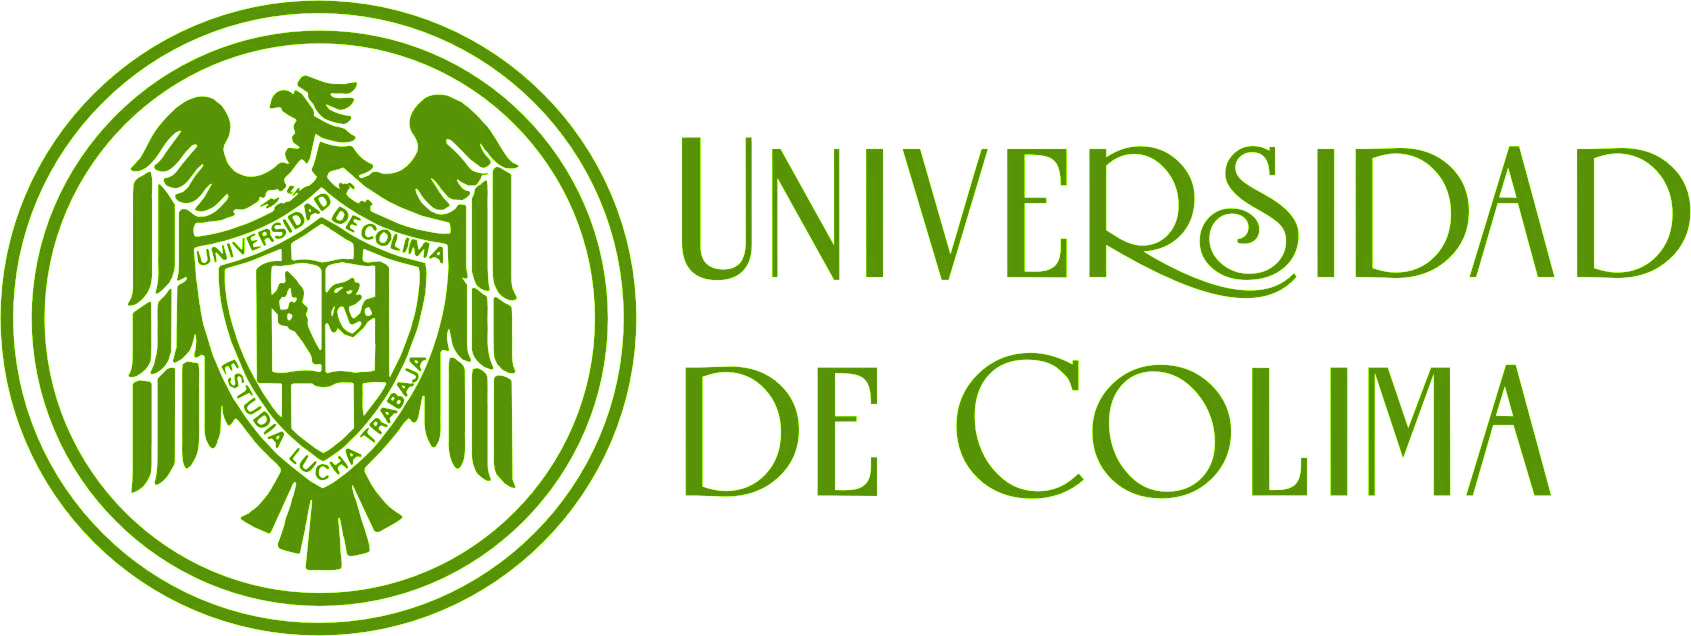 Universidad Católica de Manizales Logo photo - 1